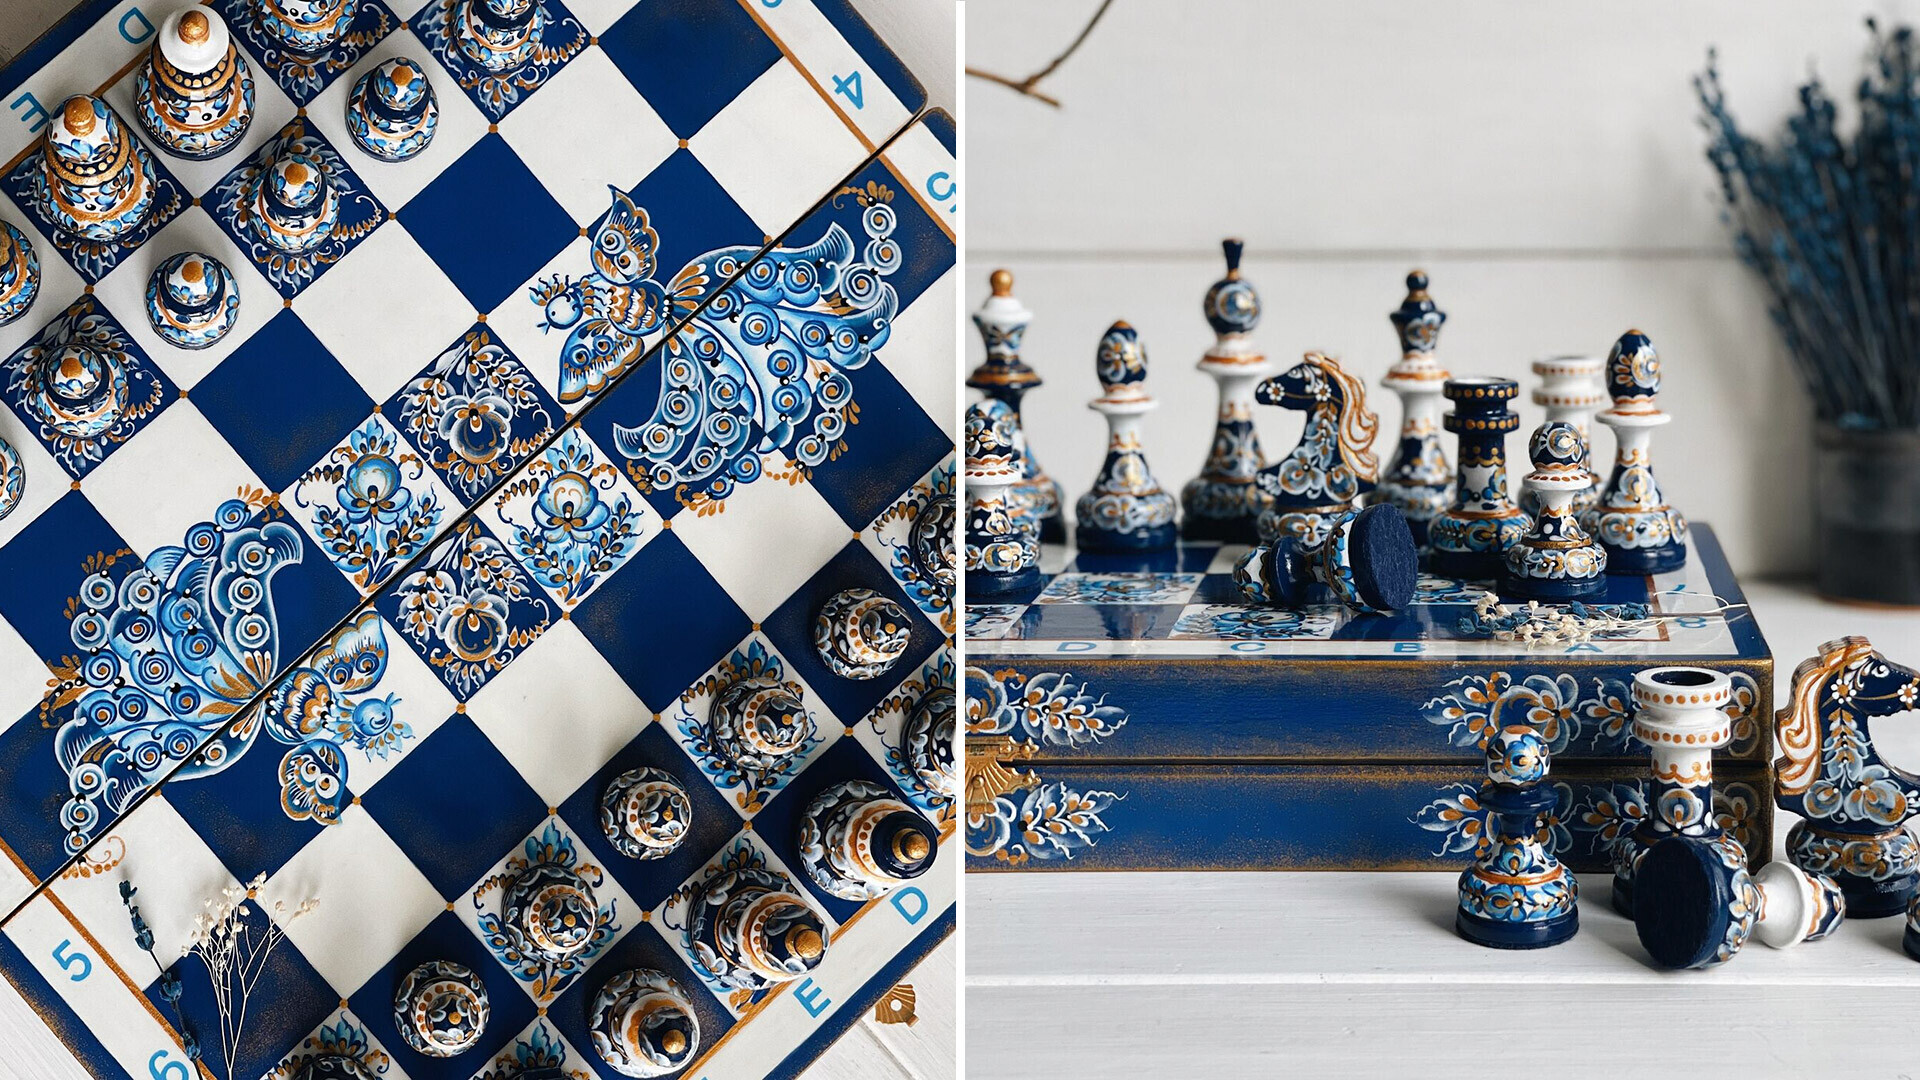 Olha que arena linda 😍 Inspirada em um tabuleiro de Xadrez da nova t